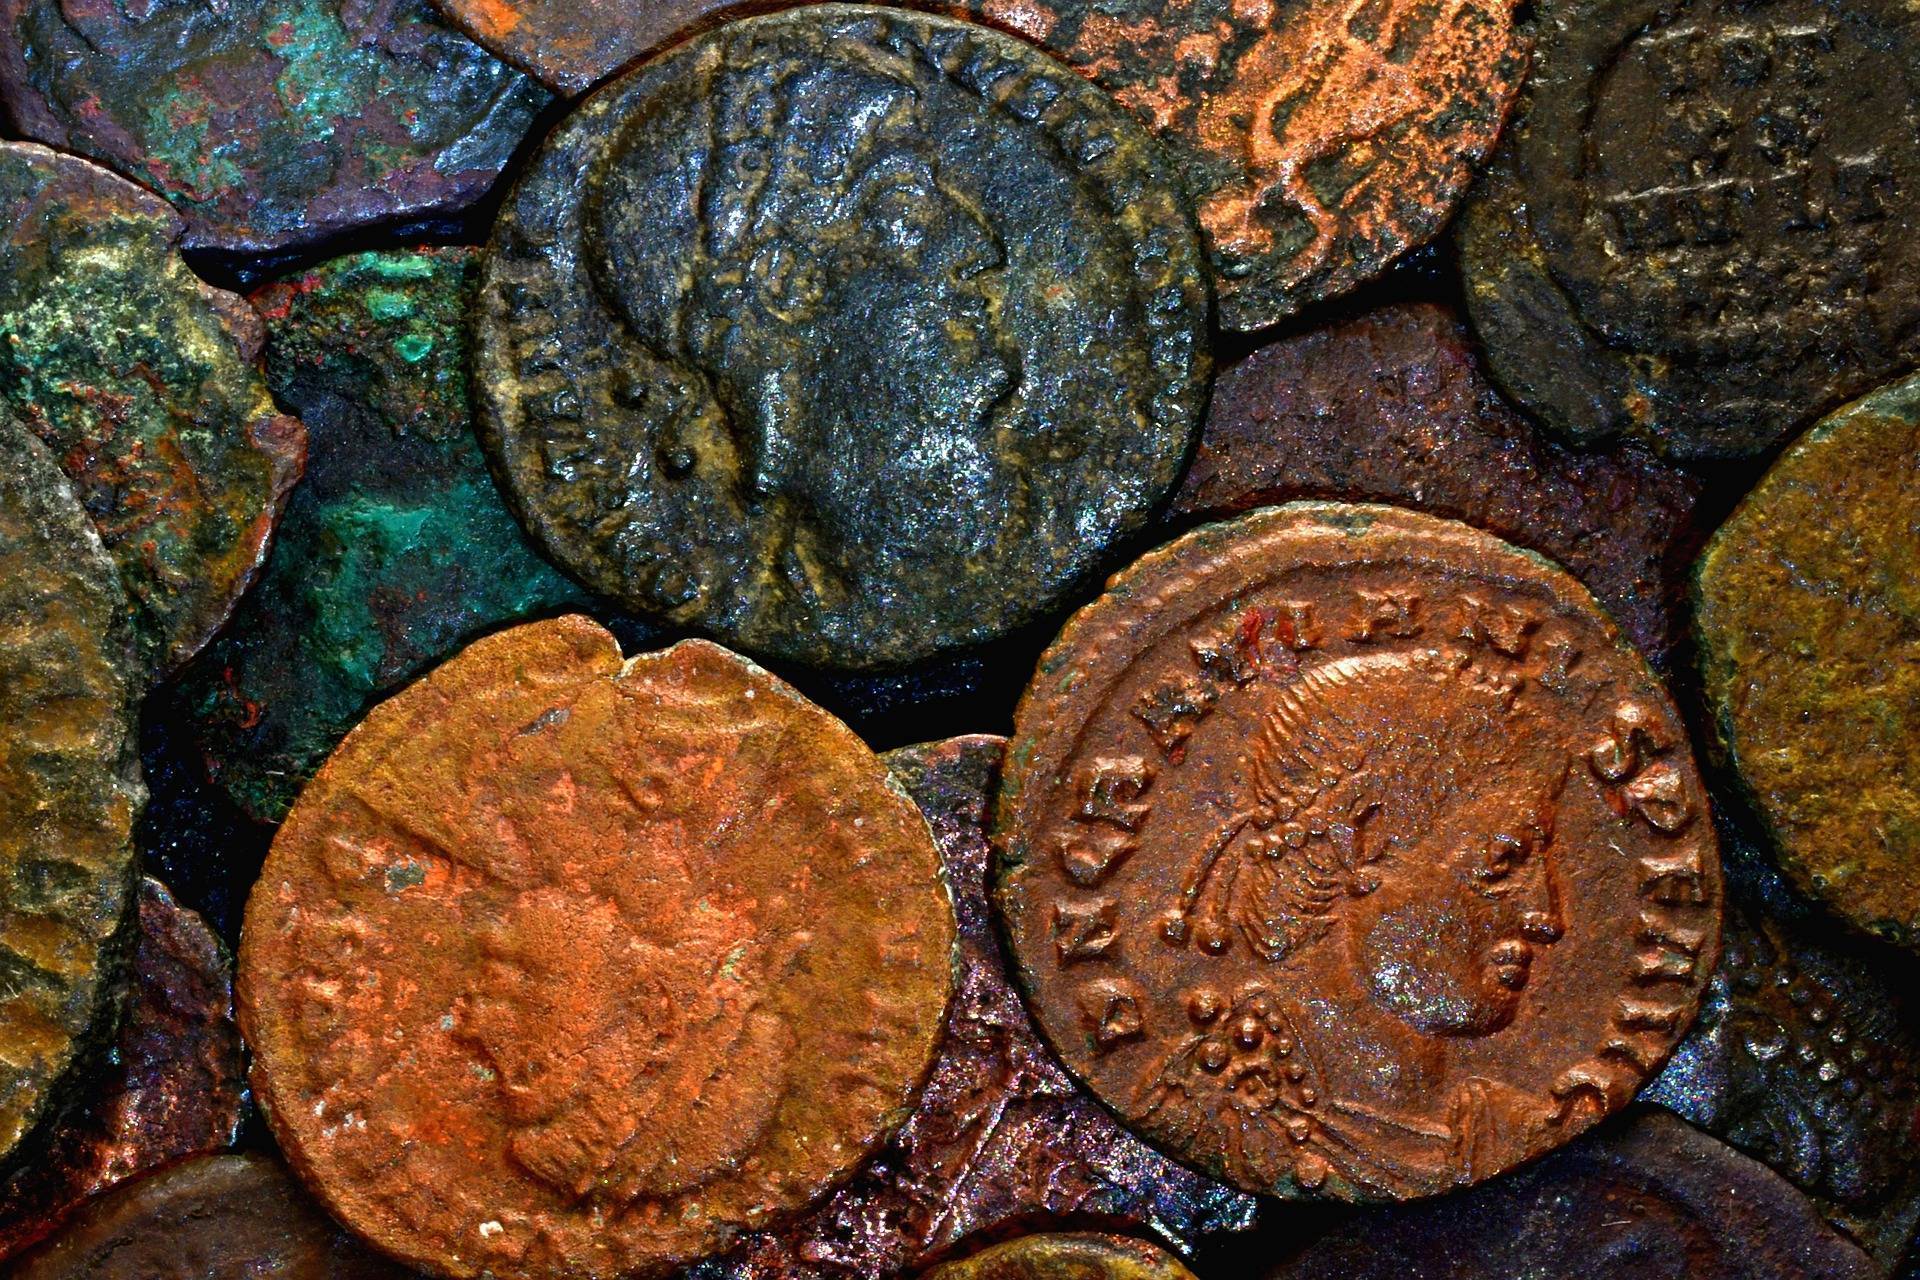 Romenomics : Commerce dans la Rome antique, mondialisation aujourd'hui. Crédit photo : Pixabay